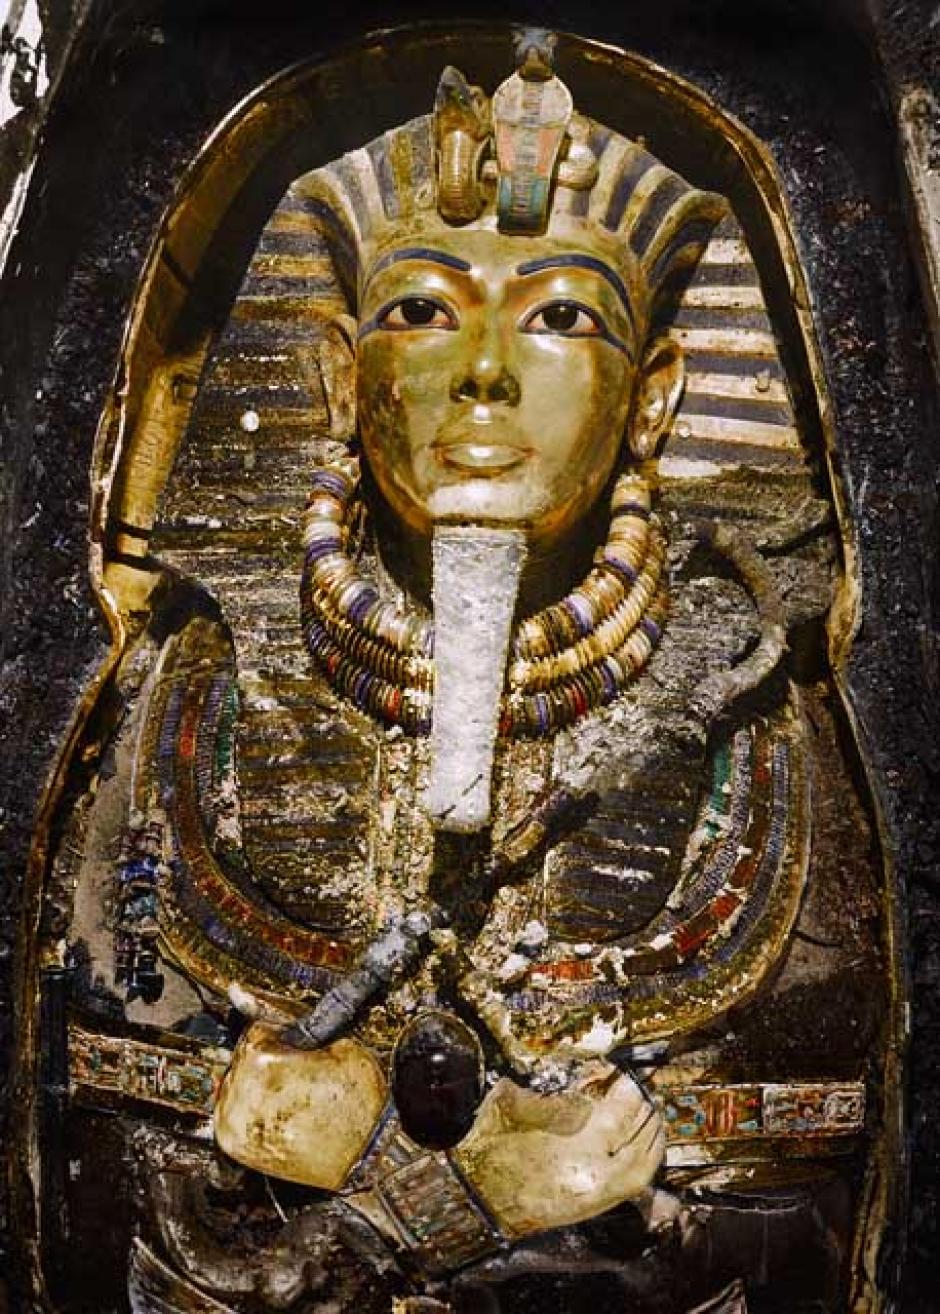 La máscara de oro (Carter nº 256a) in situ sobre la momia del Rey, todavía dentro del tercer ataúd (el más interior) de oro macizo (Carter nº 255).